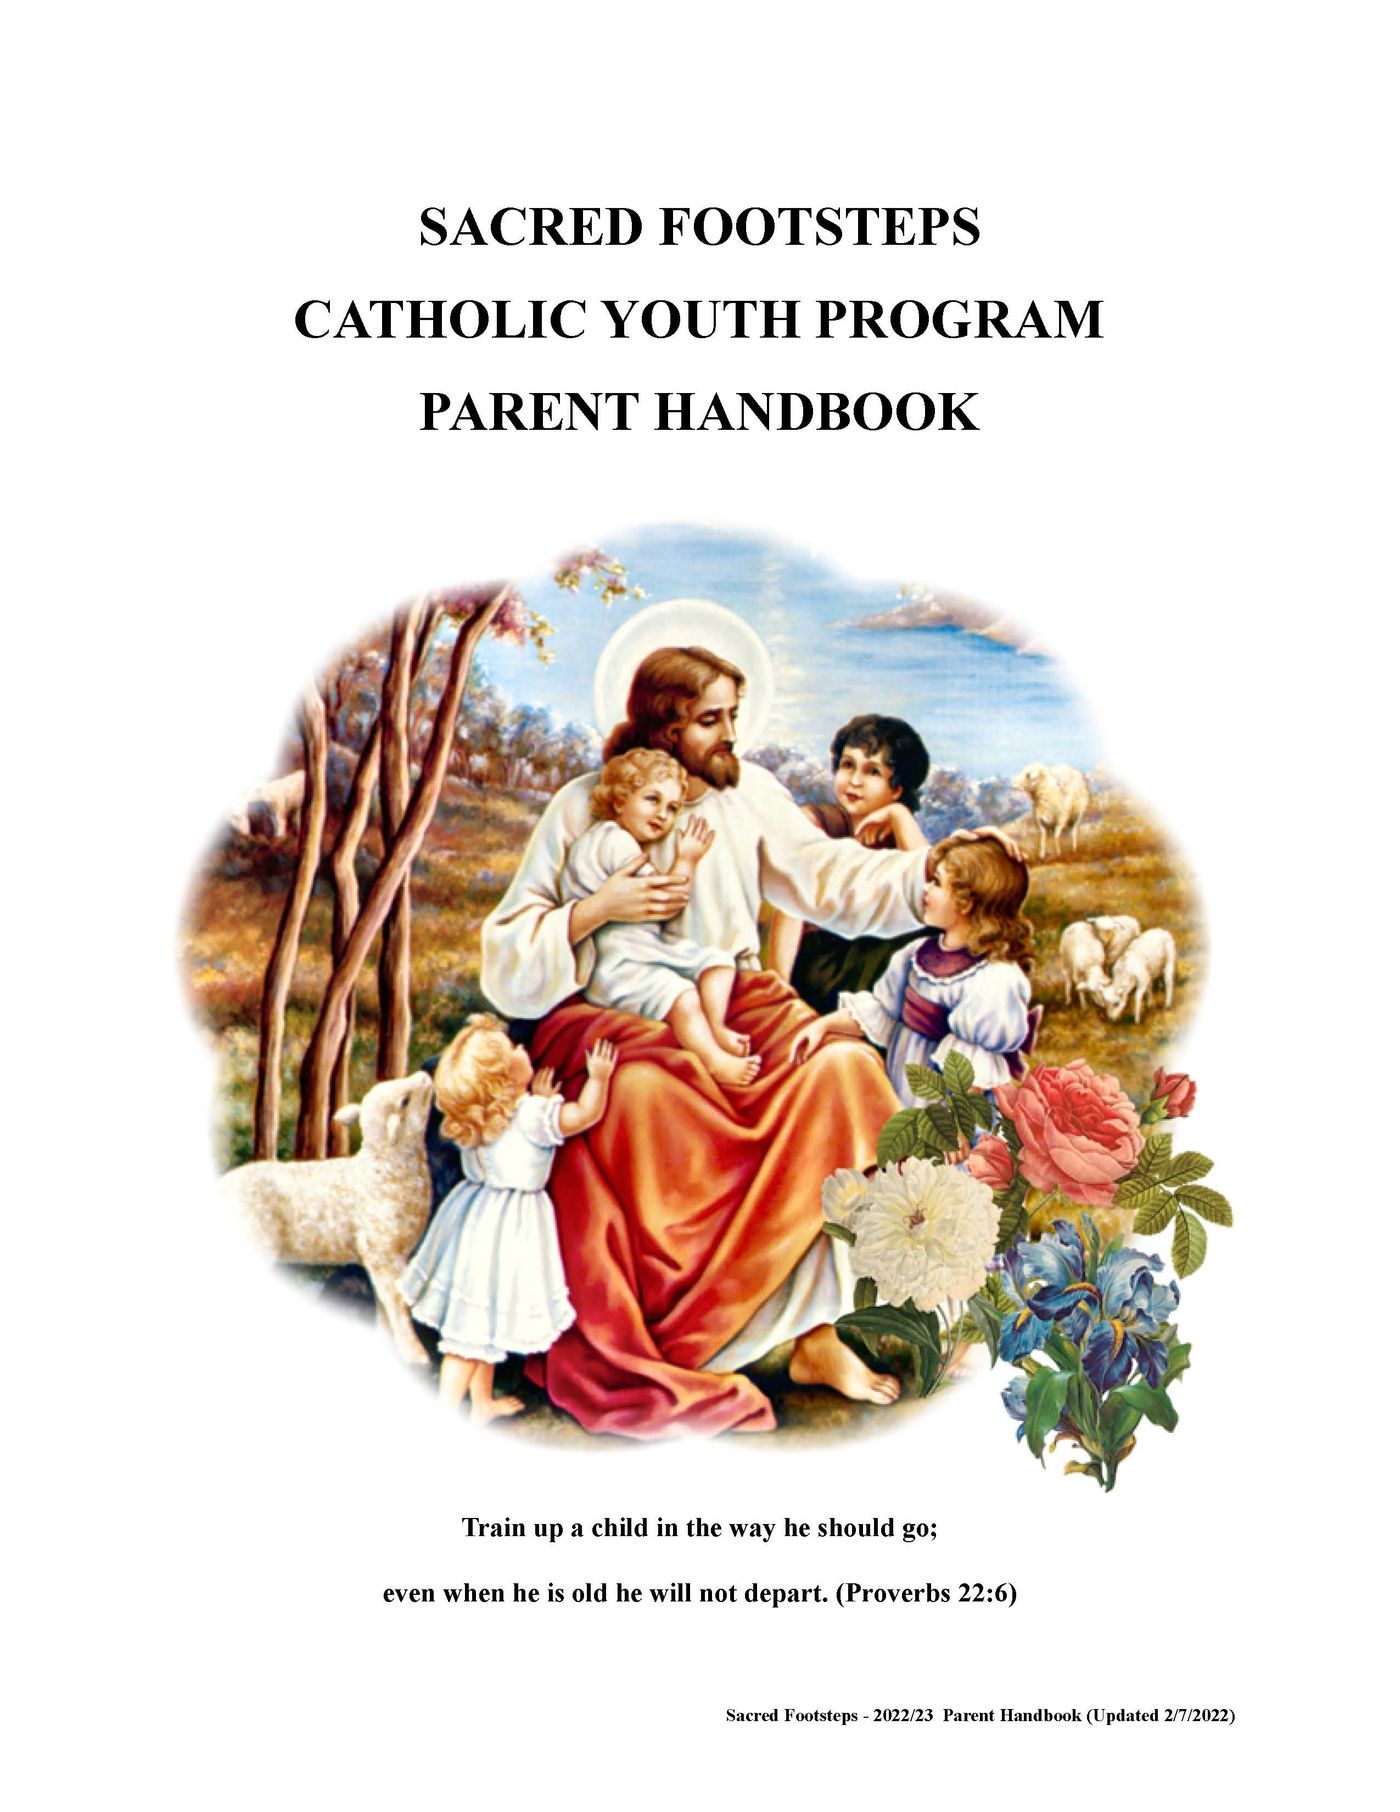 Sacred Footsteps Parent Handbook_Page_01.jpg